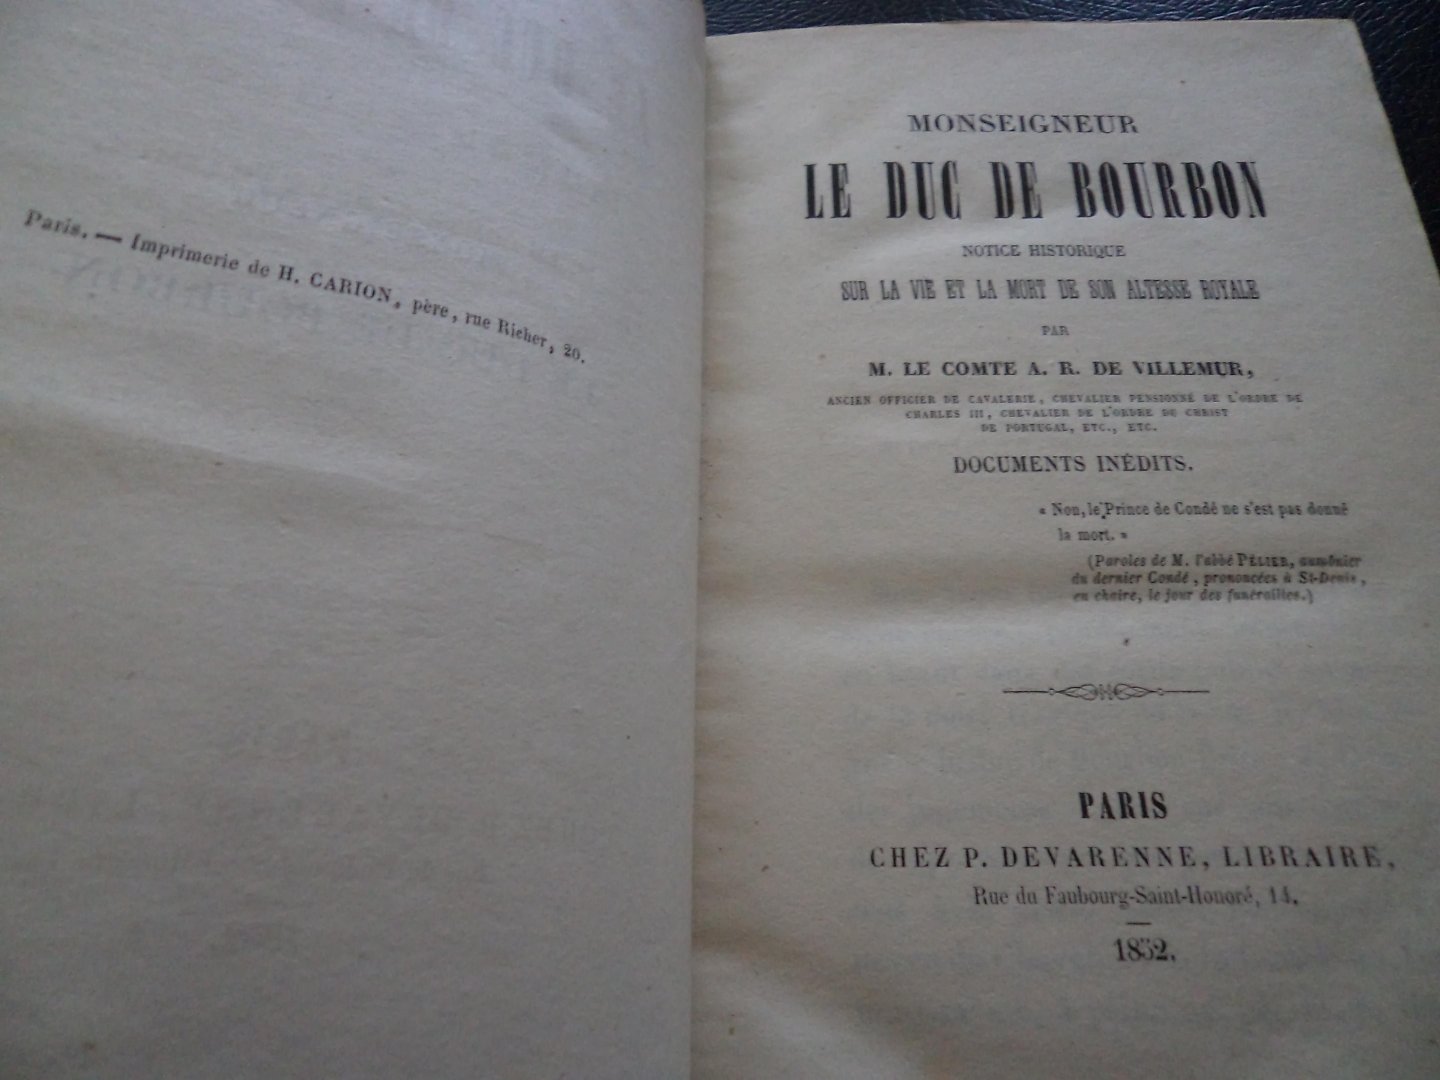 DE VILLEMUR, M. LE COMPTE A.R. - (1852) - ‎MONSEIGNEUR LE DUC DE BOURBON. Notice historique sur la vie et la mort de son Altesse Royale. Documents inédits.‎